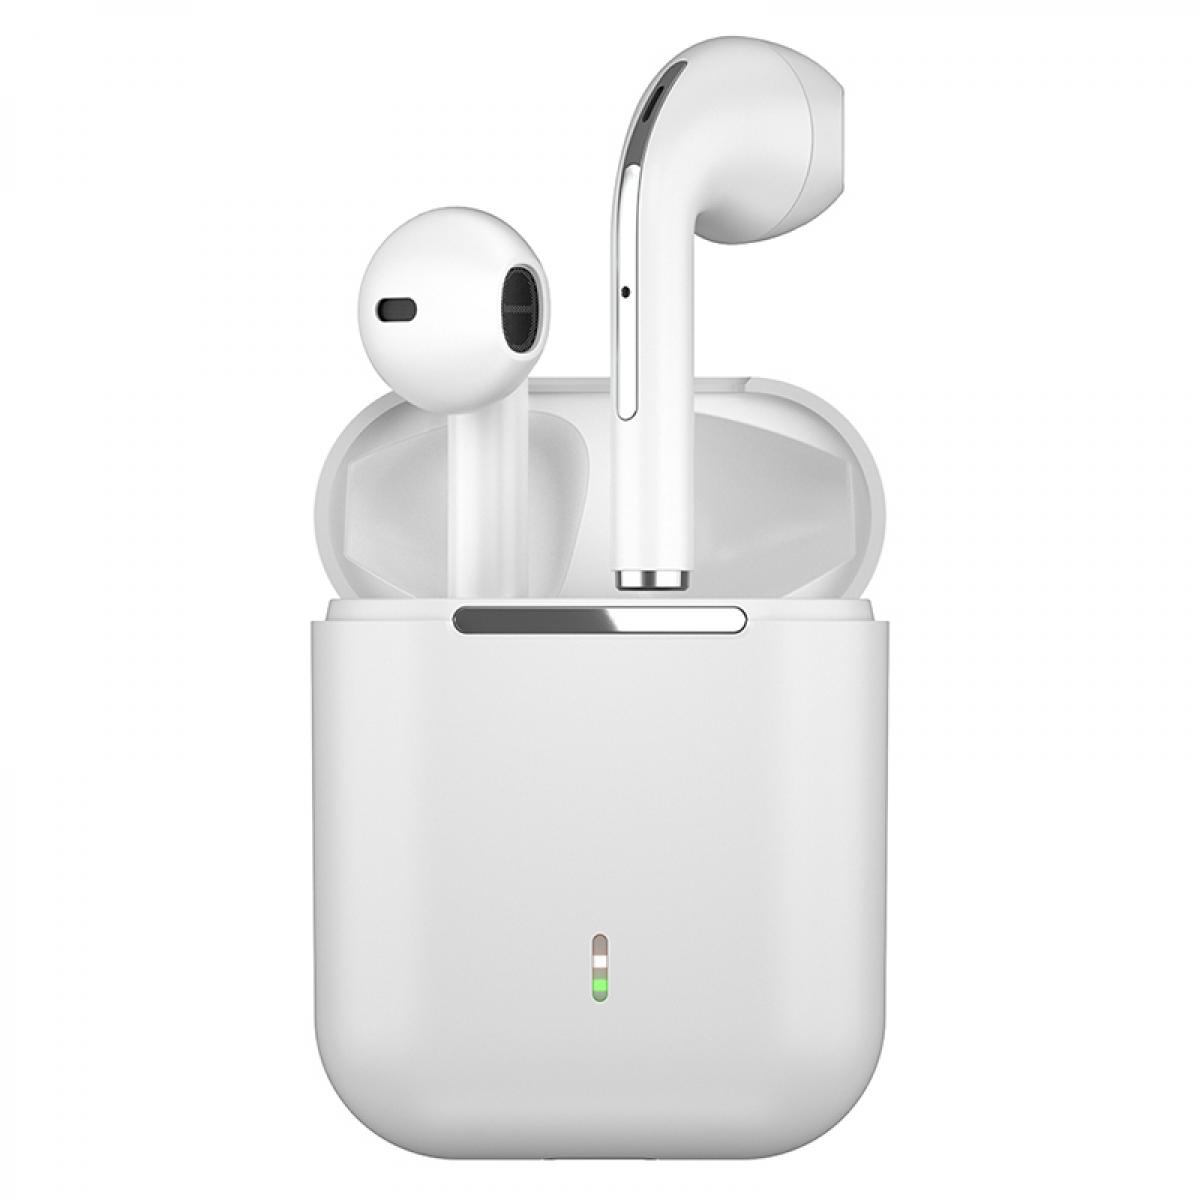 Drahtlose Kopfhörer mit BluetoothHeadset in weißNur-im-Ohr Kopfhörer 